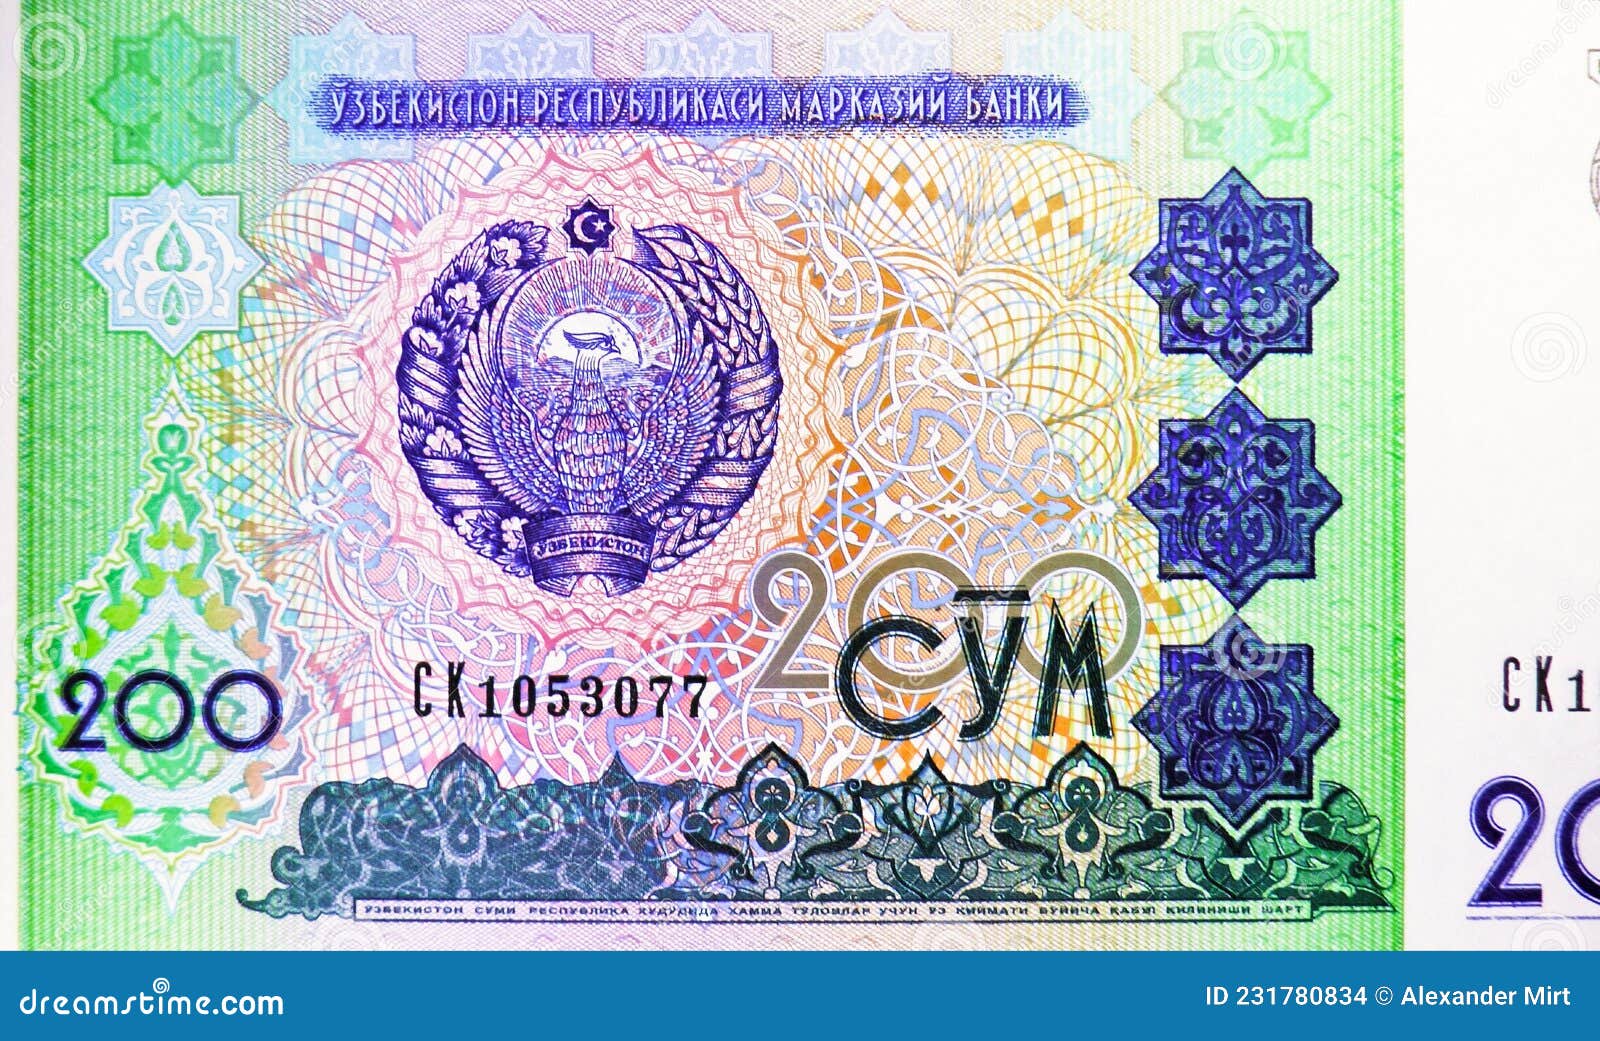 200 Sum Banknote, Bank of Uzbekistan, Closeup Bill Fragment Shows Coat ...